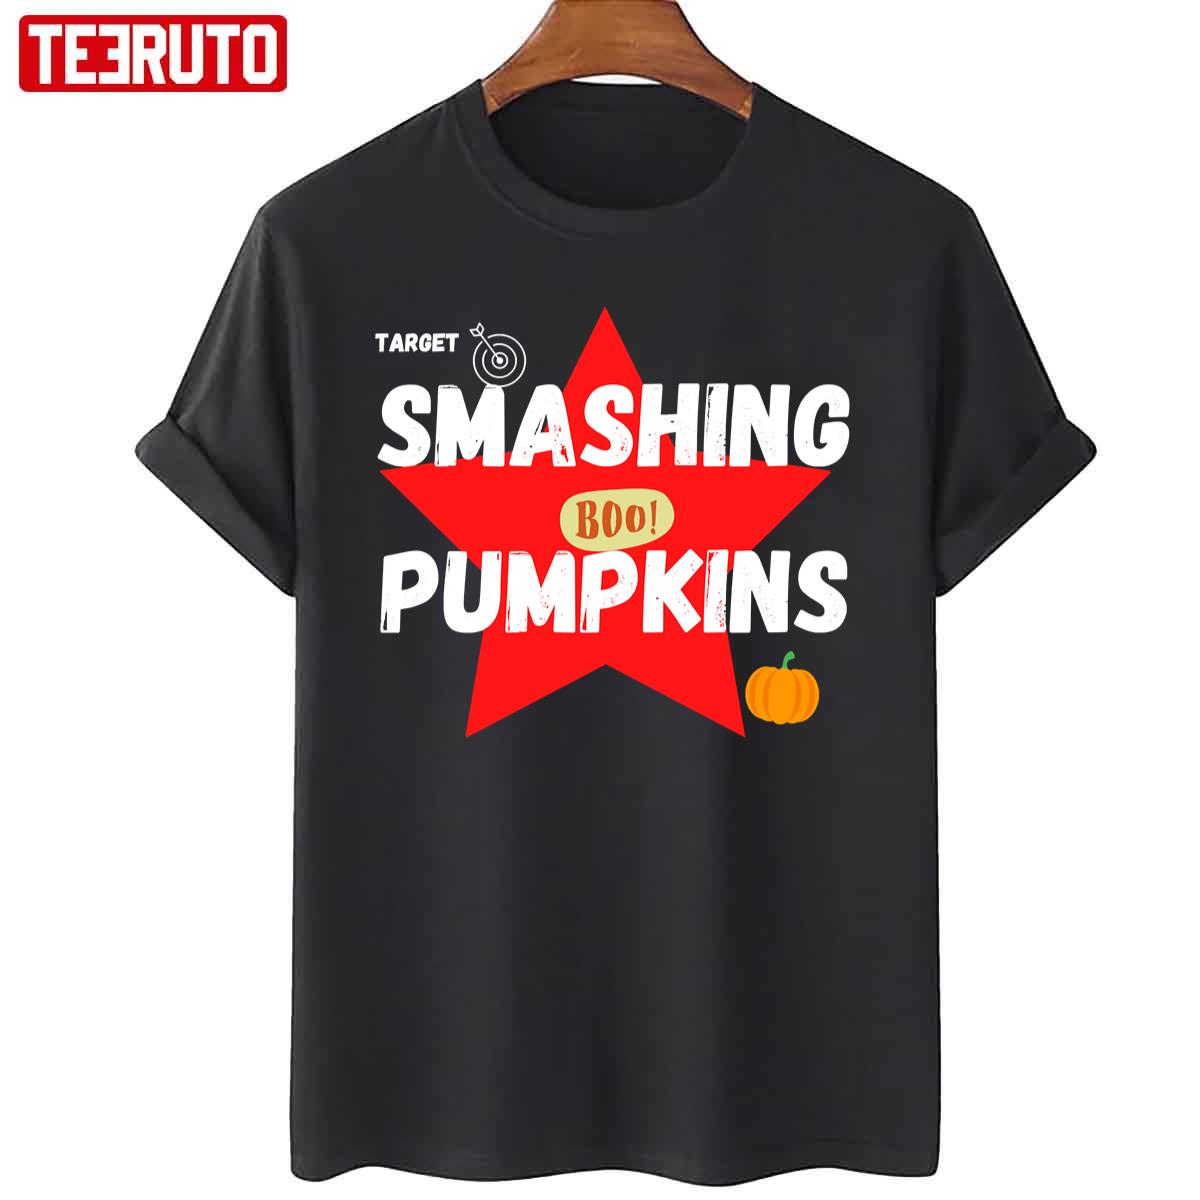 Target Smashing Pumpkins Red Unisex T-Shirt